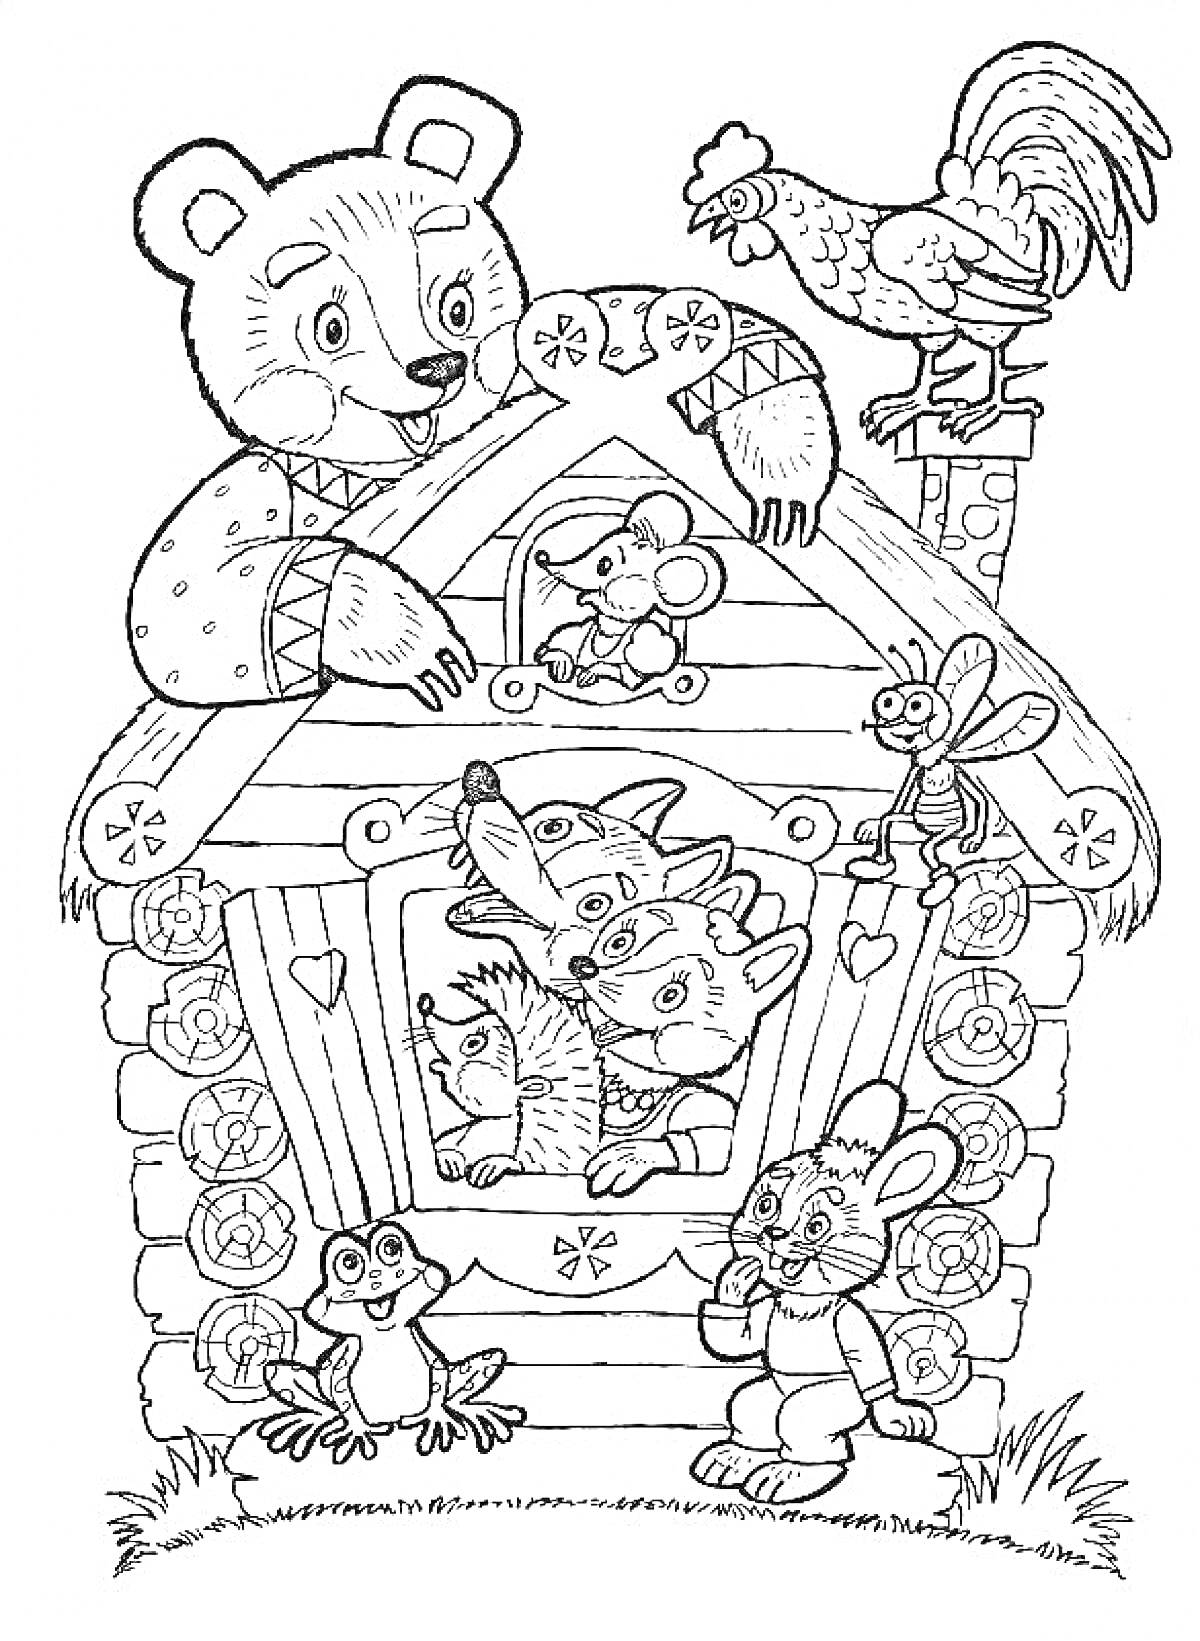 Раскраска Теремок с животными (медведь, петух, мышка, волк, лиса, лягушка, заяц, медведка)